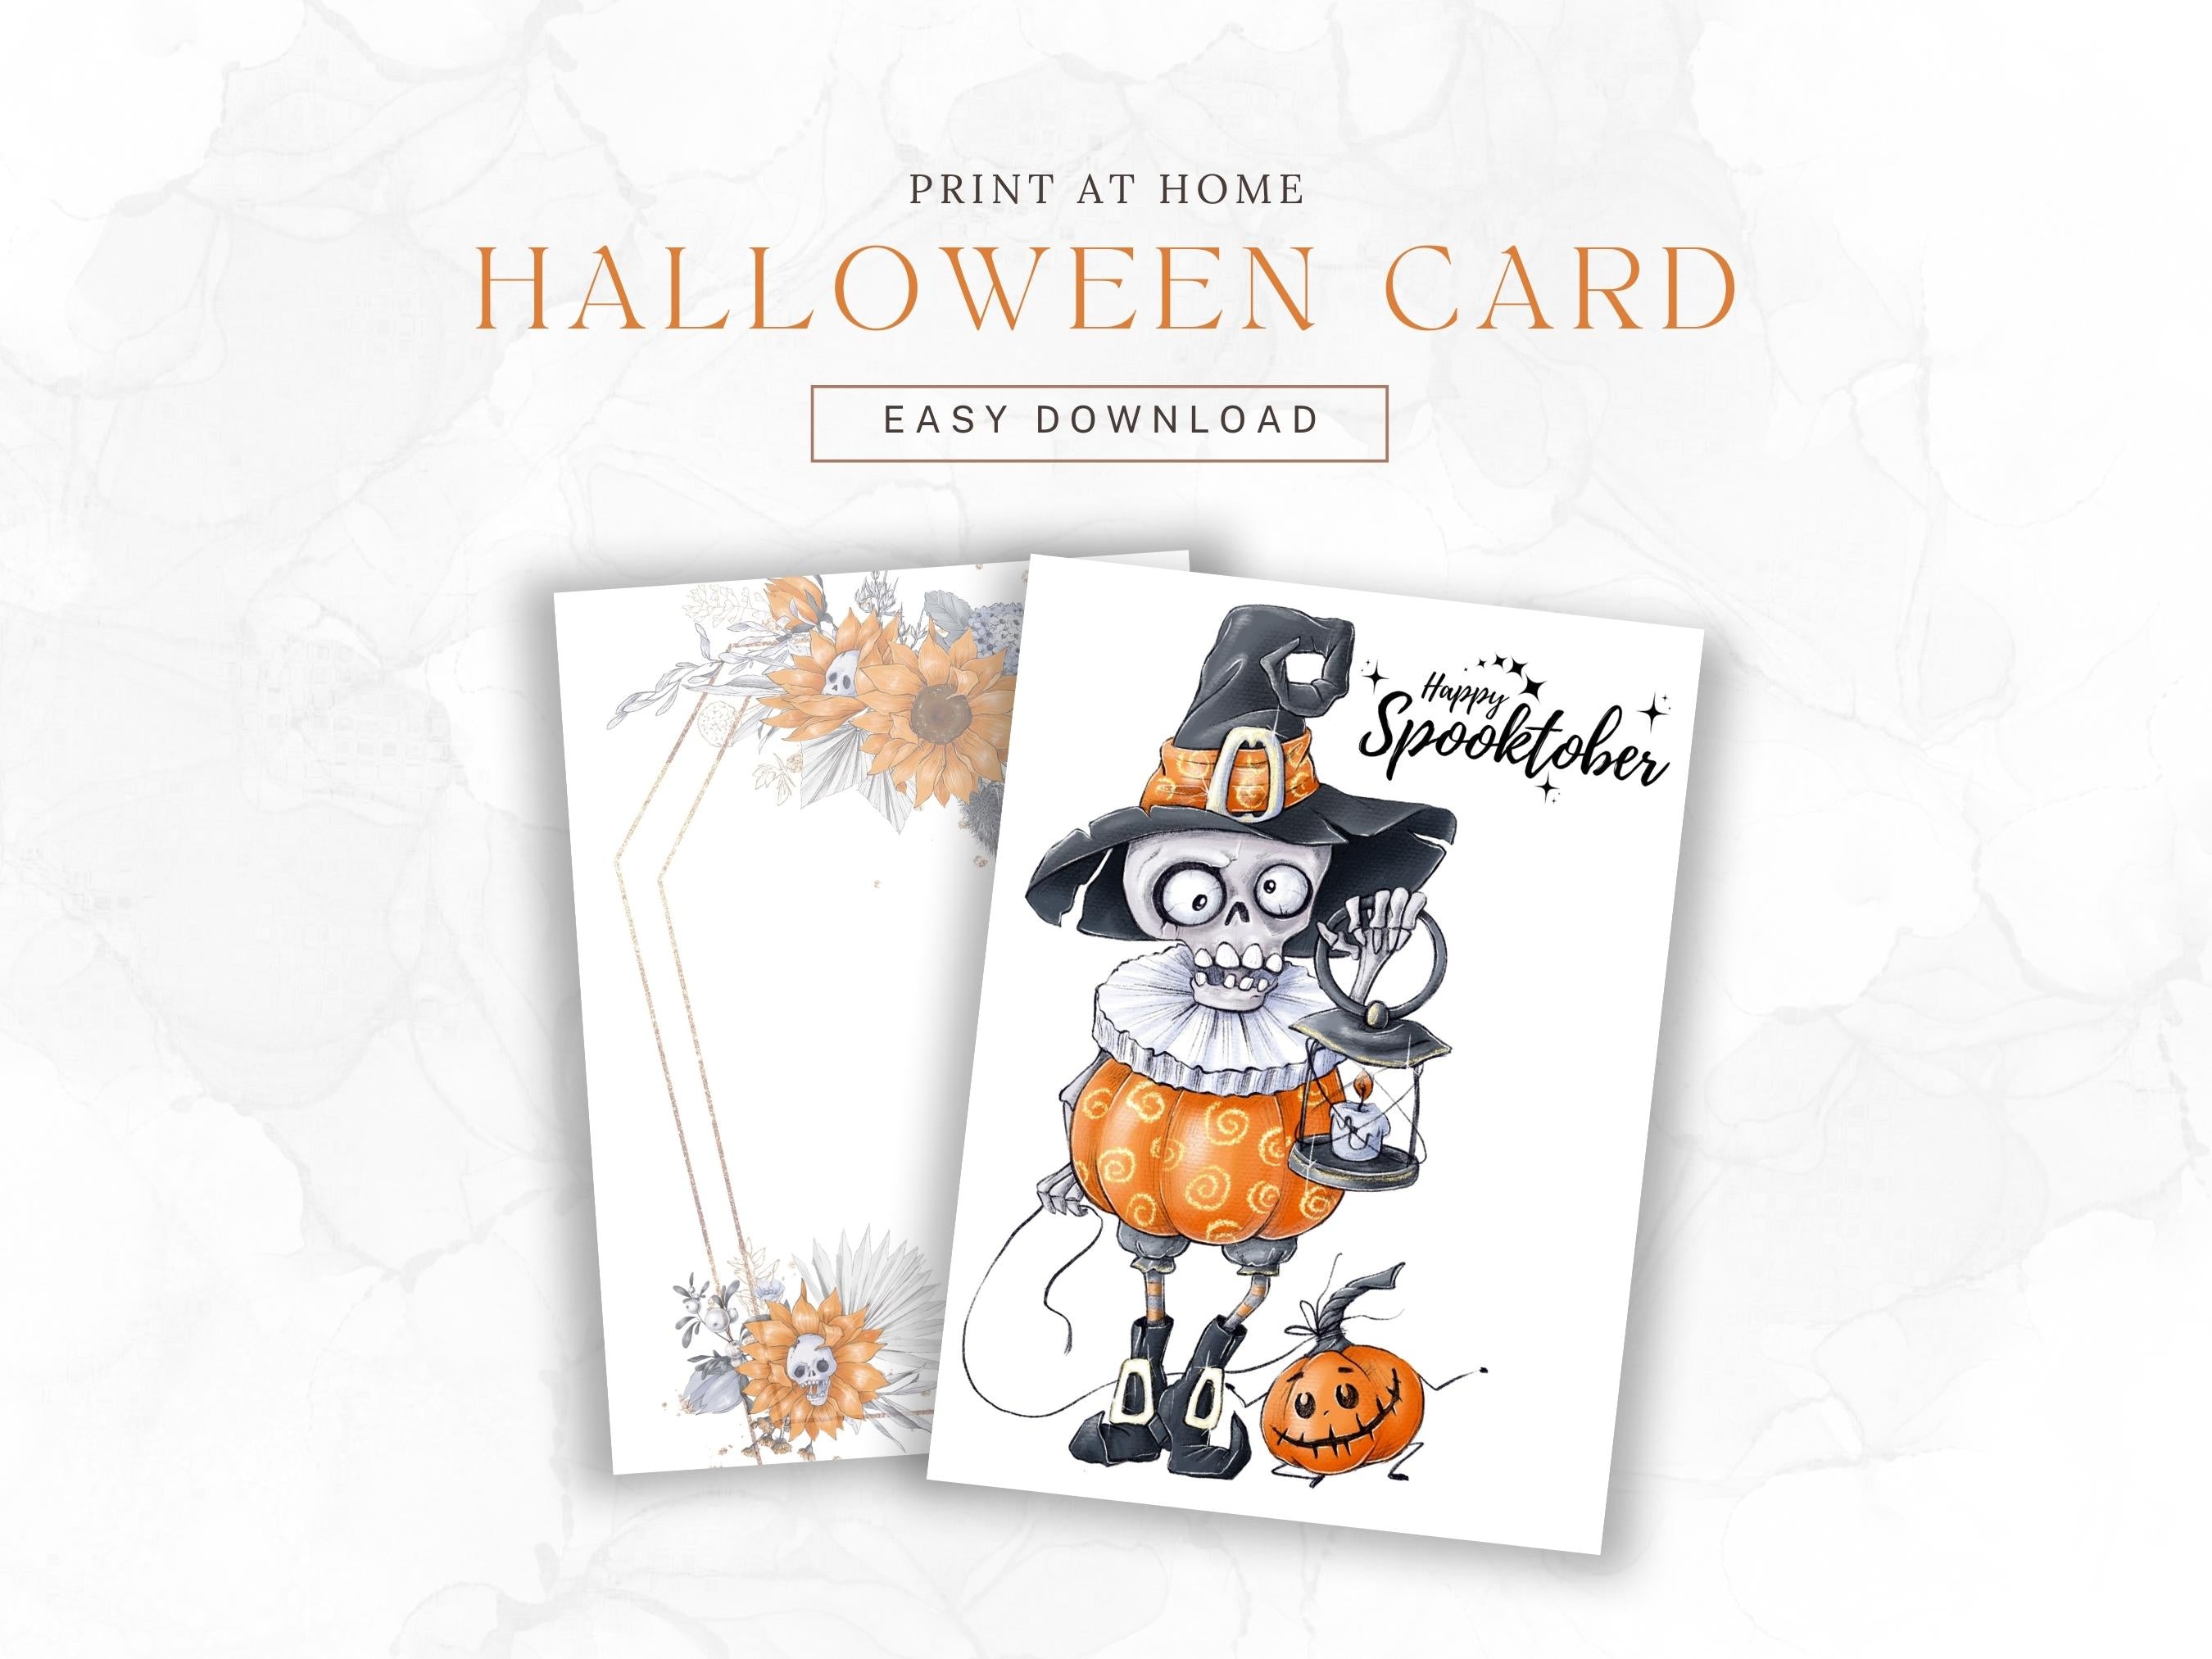 Happy Spooktober Postkarte mit Skelett Nachtwächter